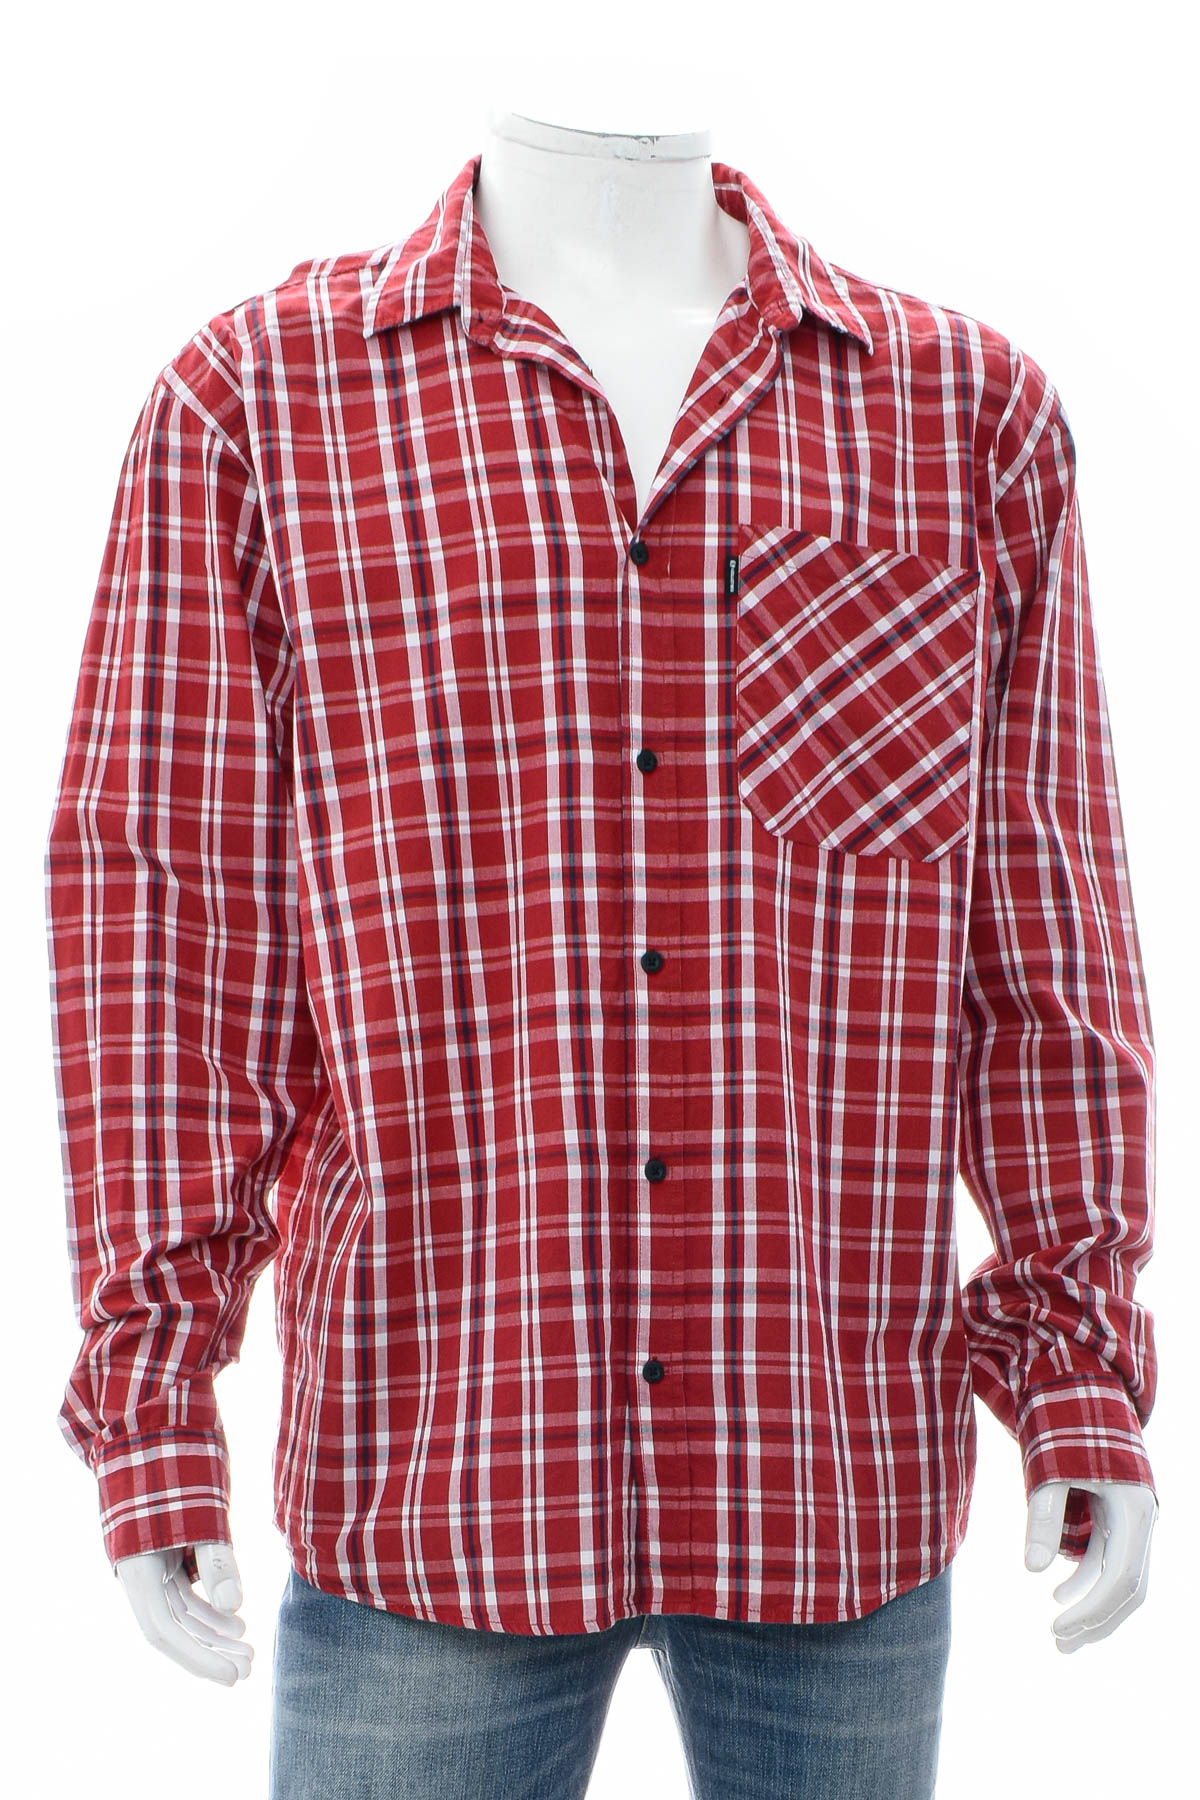 Ανδρικό πουκάμισο - Salomon - 0